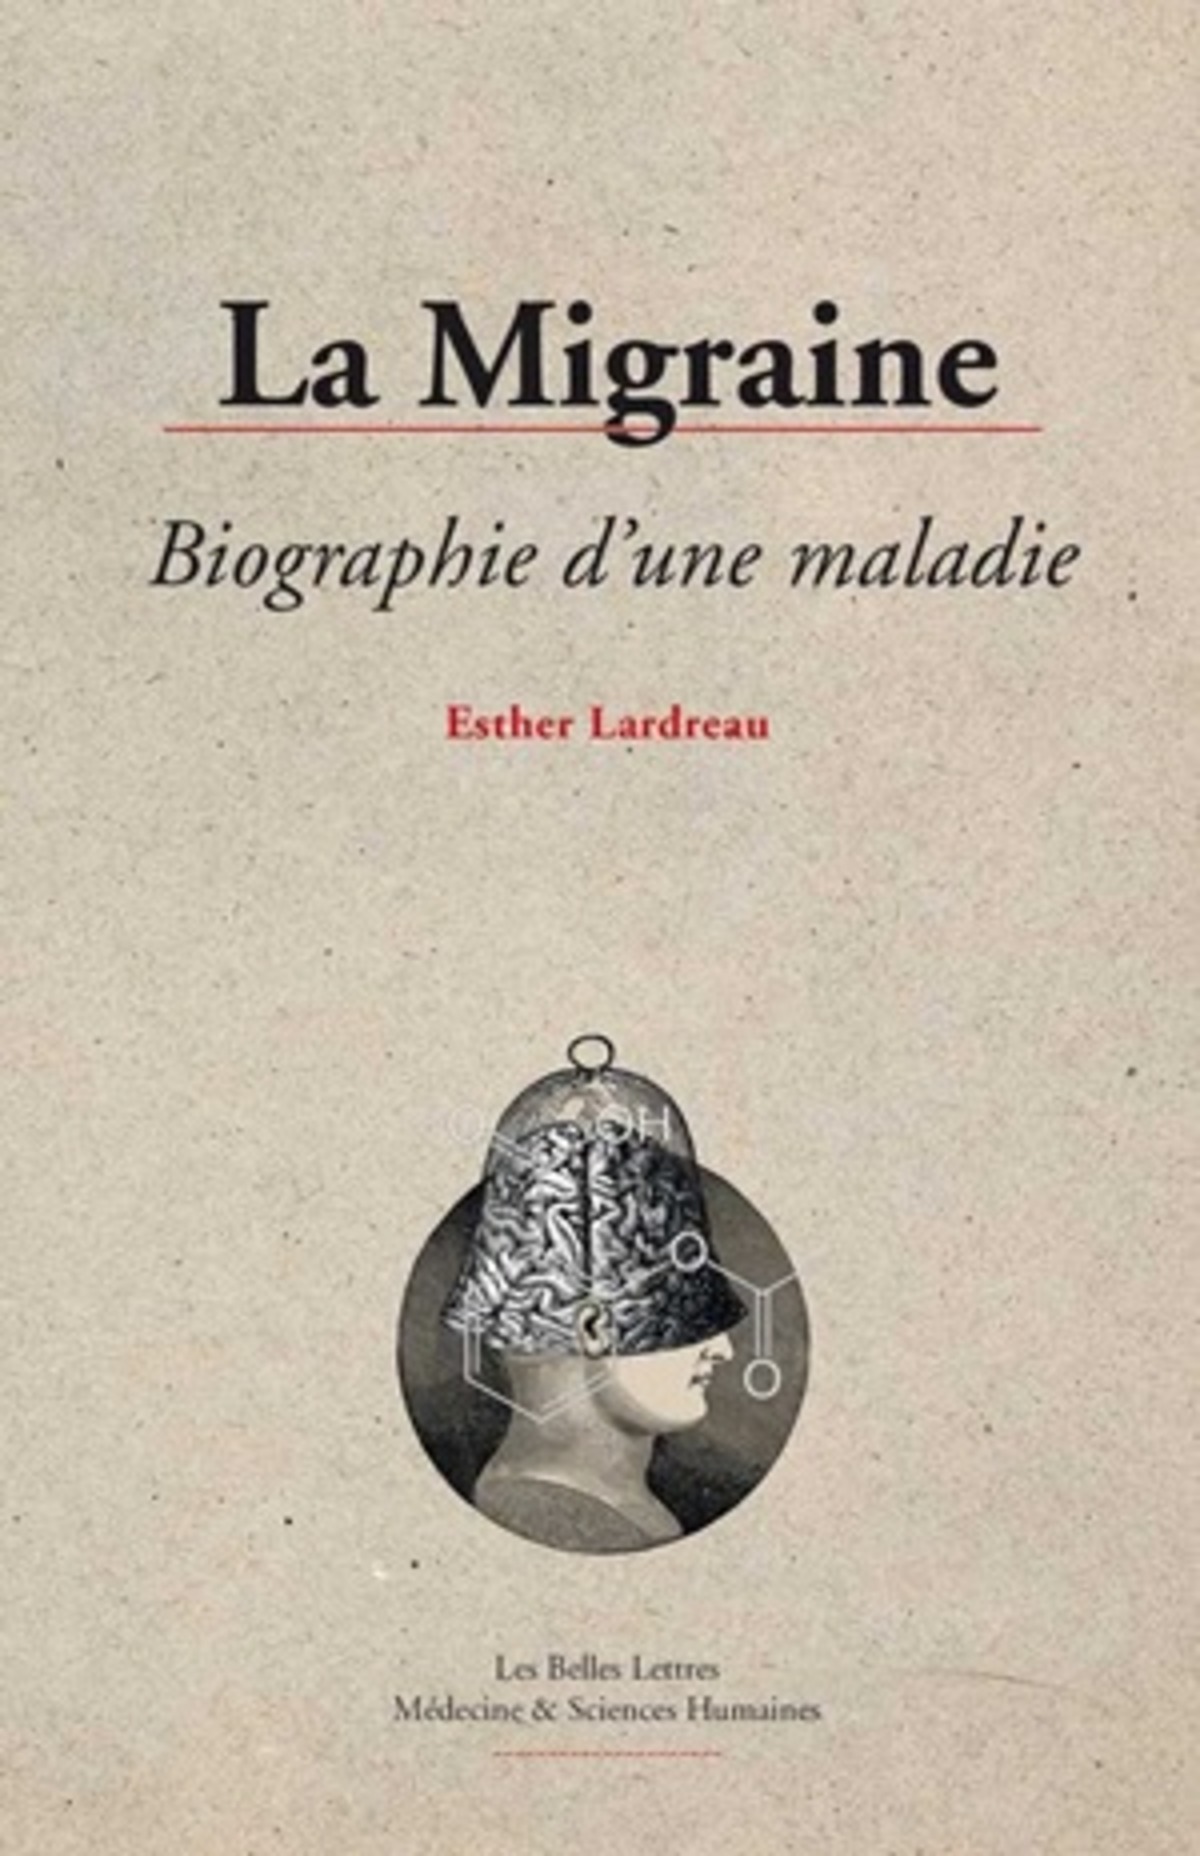 La Migraine, biographie d'une maladie